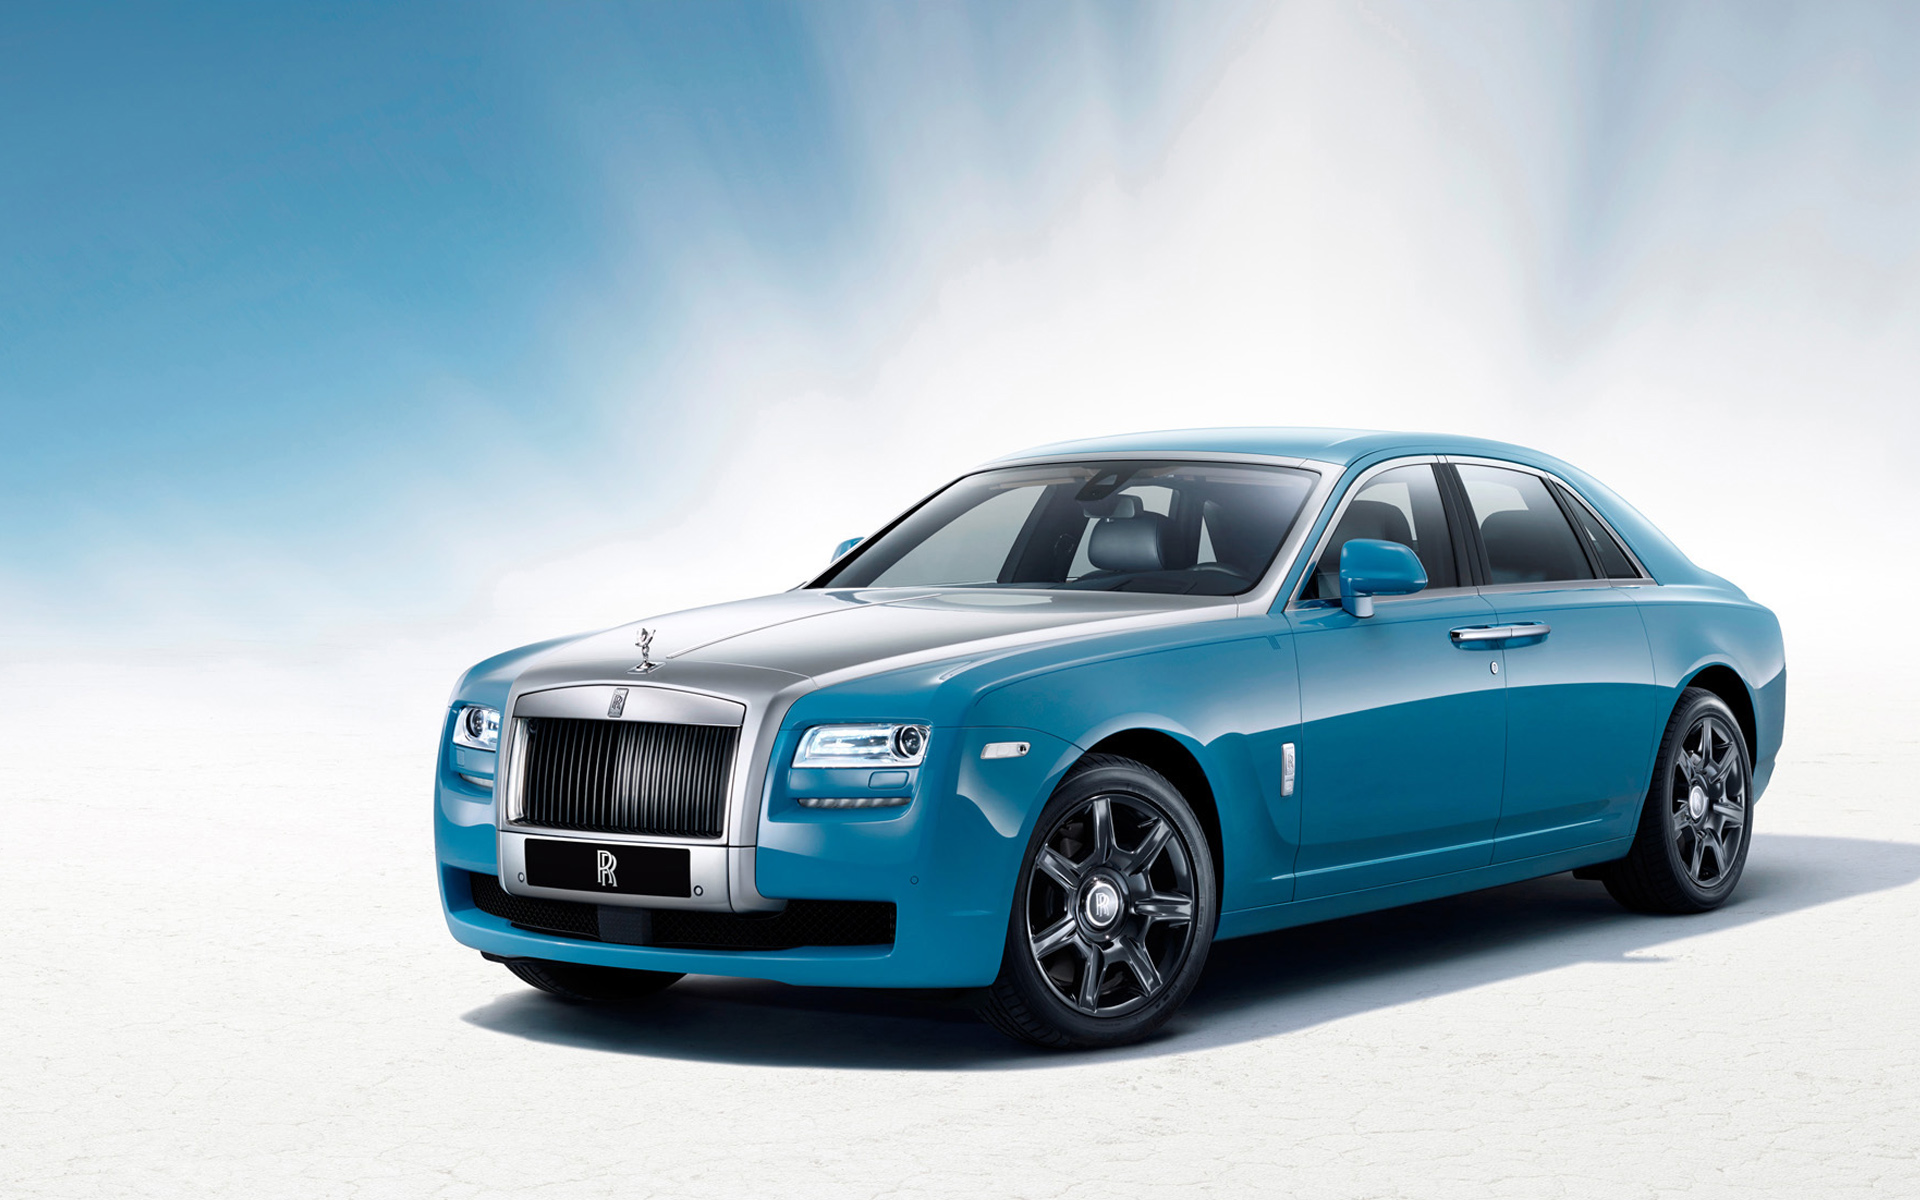 2013 Rolls Royce Centenary Alpine Trial Wallpapers HD Wallpapers